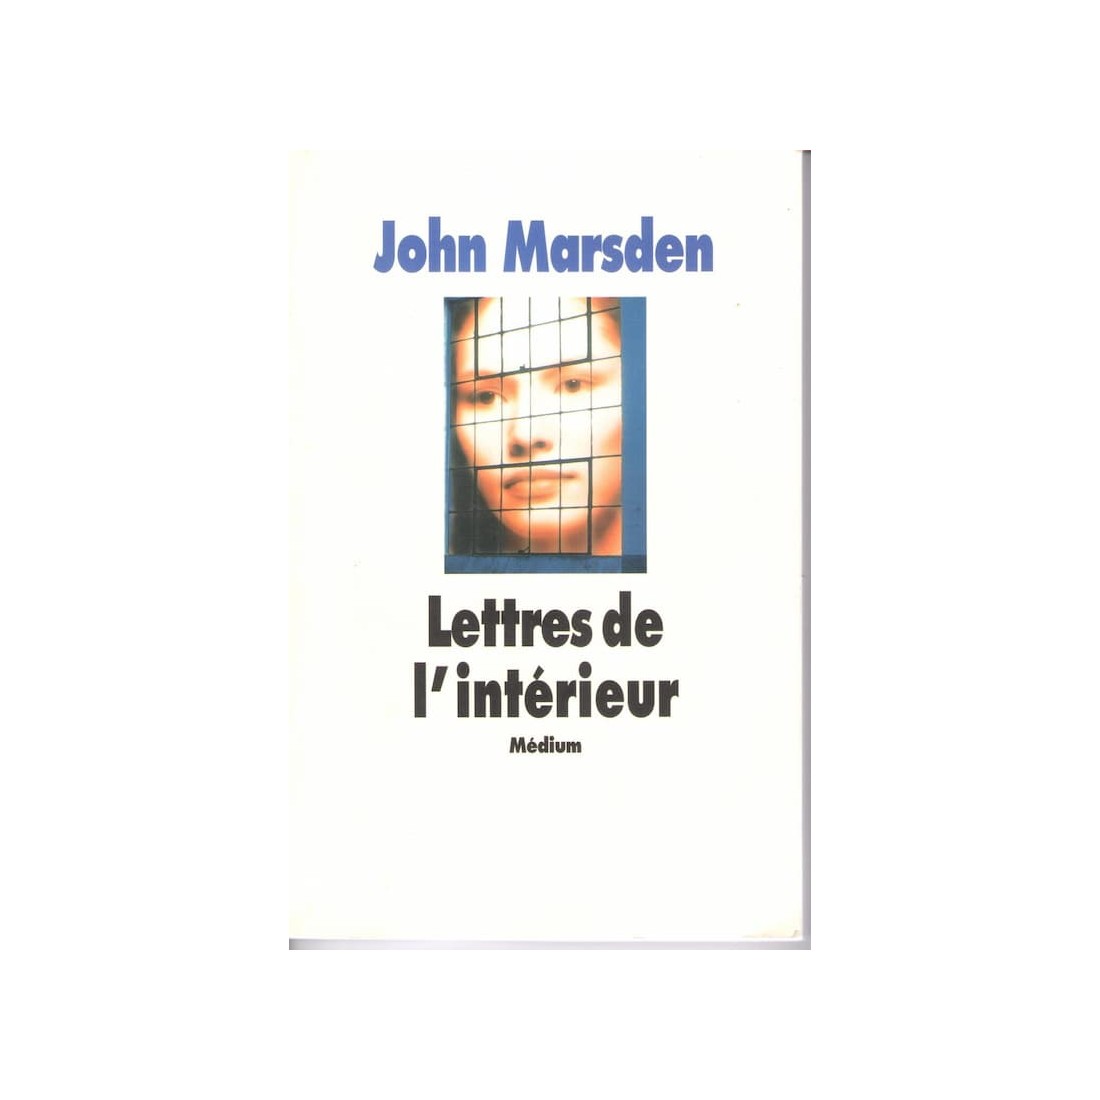 Lettres de l'intérieur - Roman de John Marsden - Ocazlivres.com